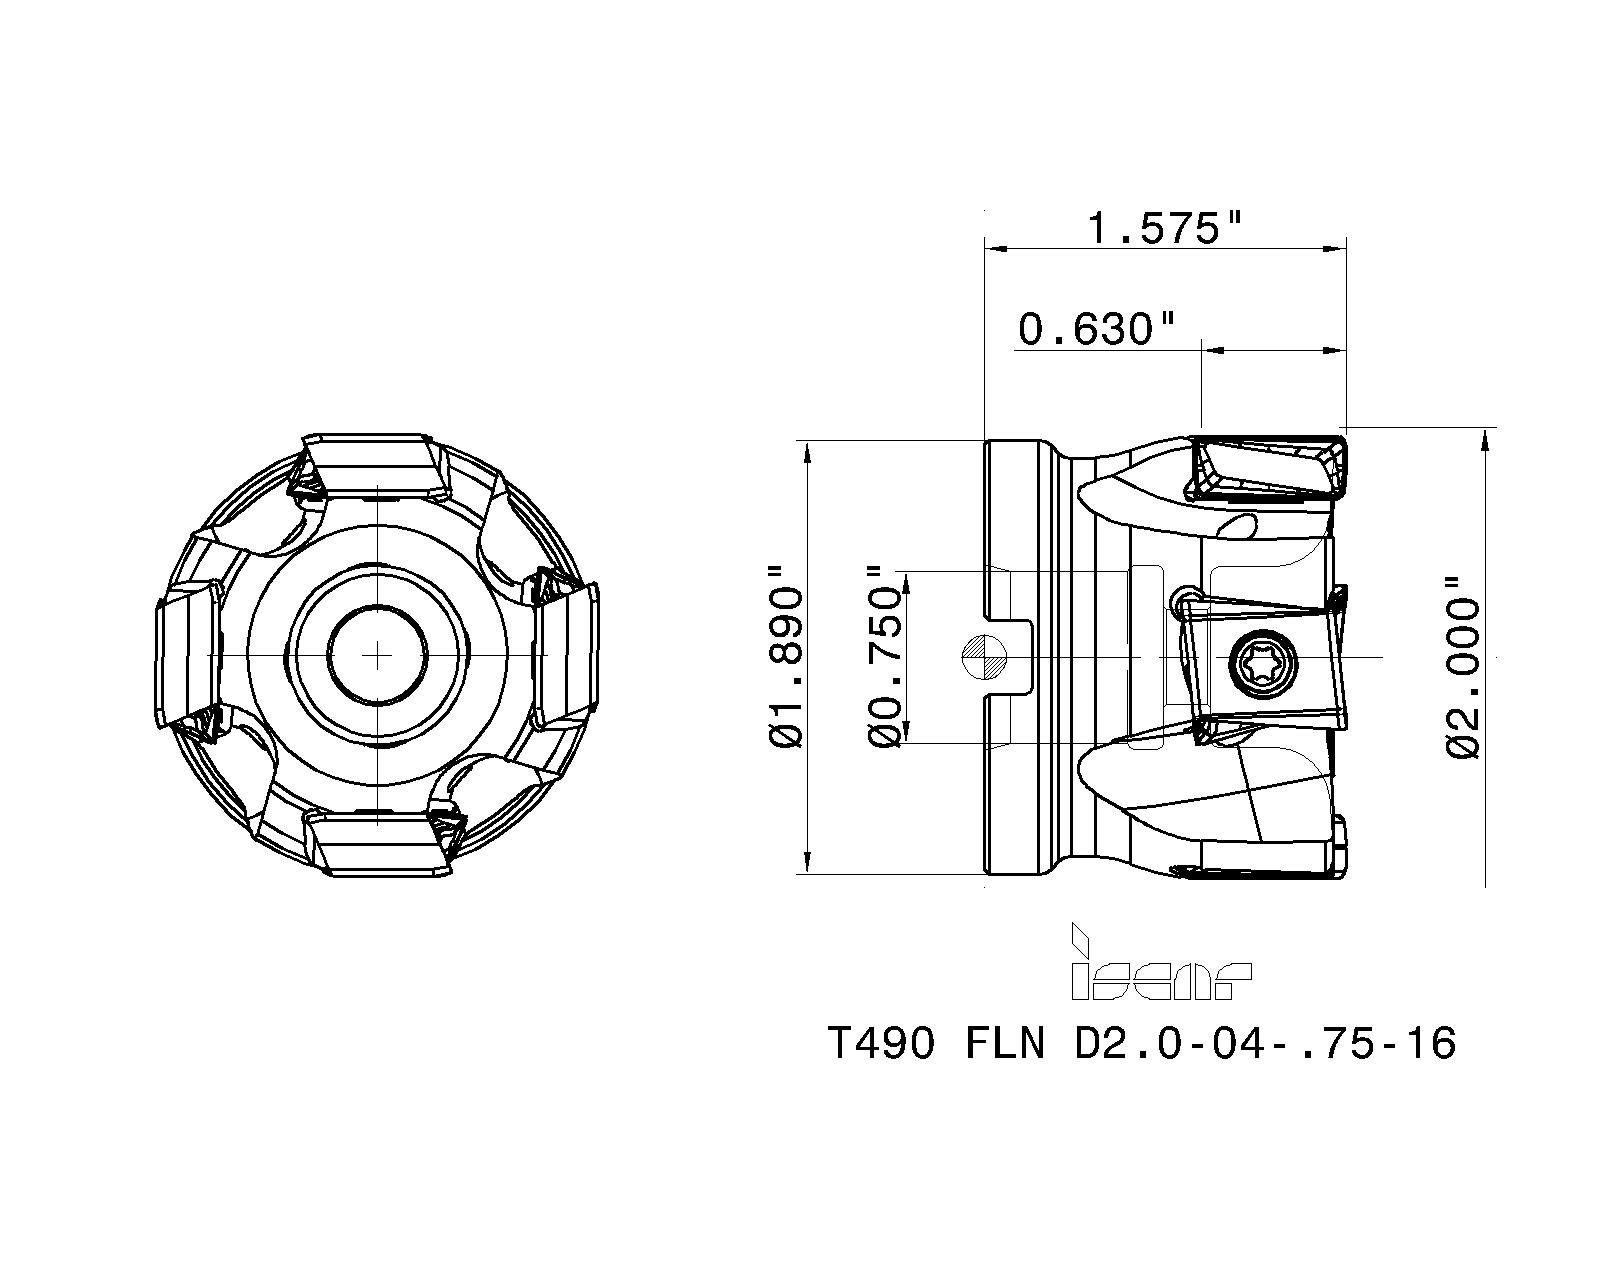 T490 FLN D2.0-04-.75-16 